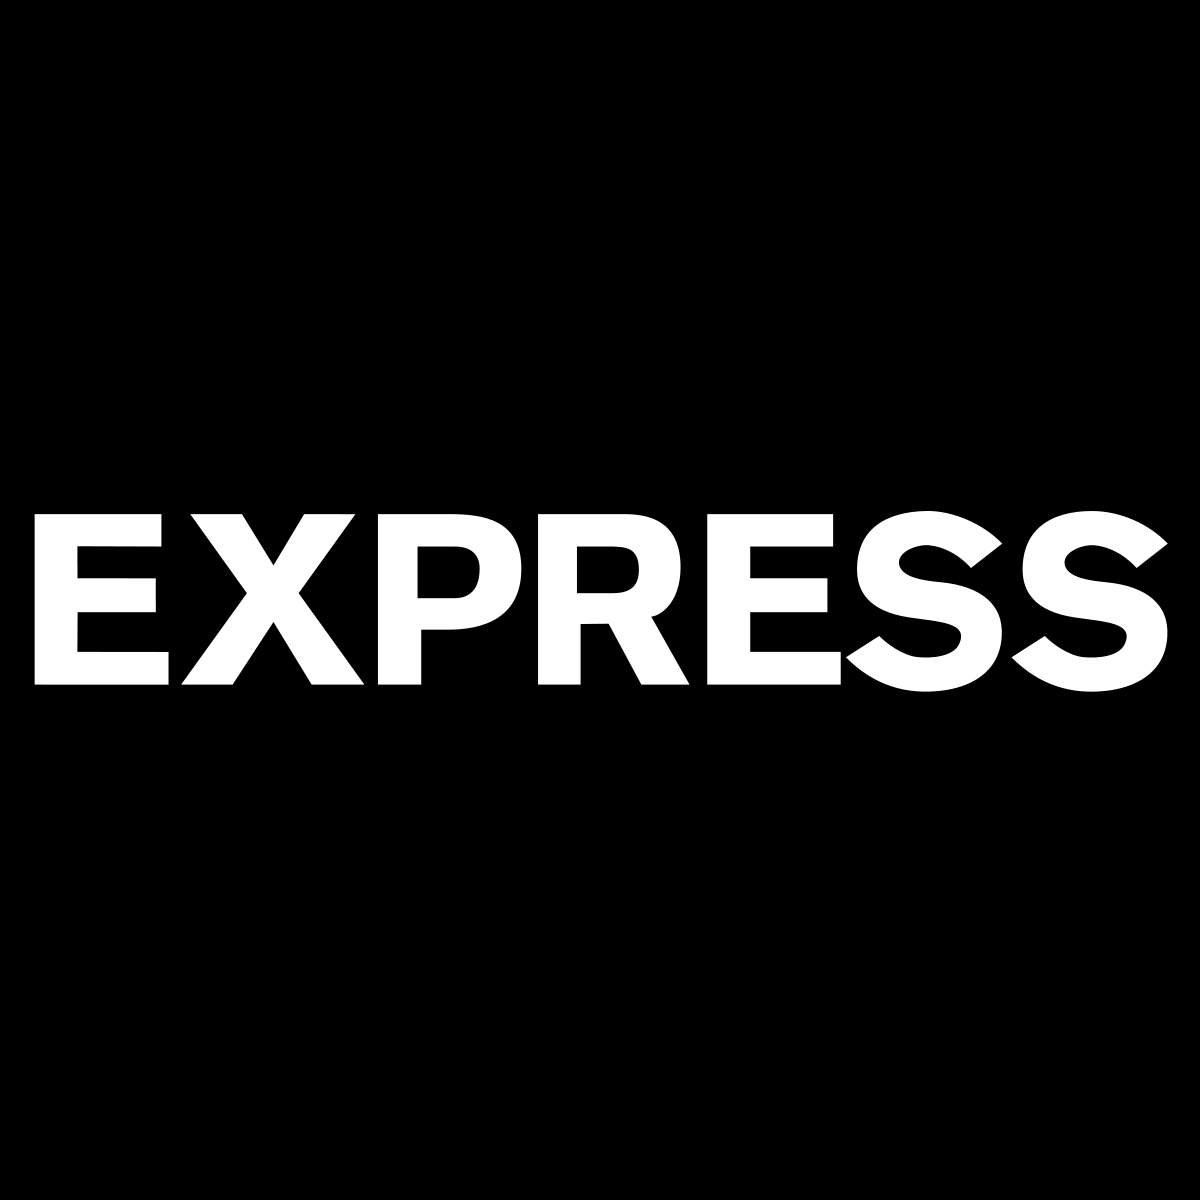 Экспресс мессенджер ржд. Express. Express надпись. Экспресс лого. Exppess.